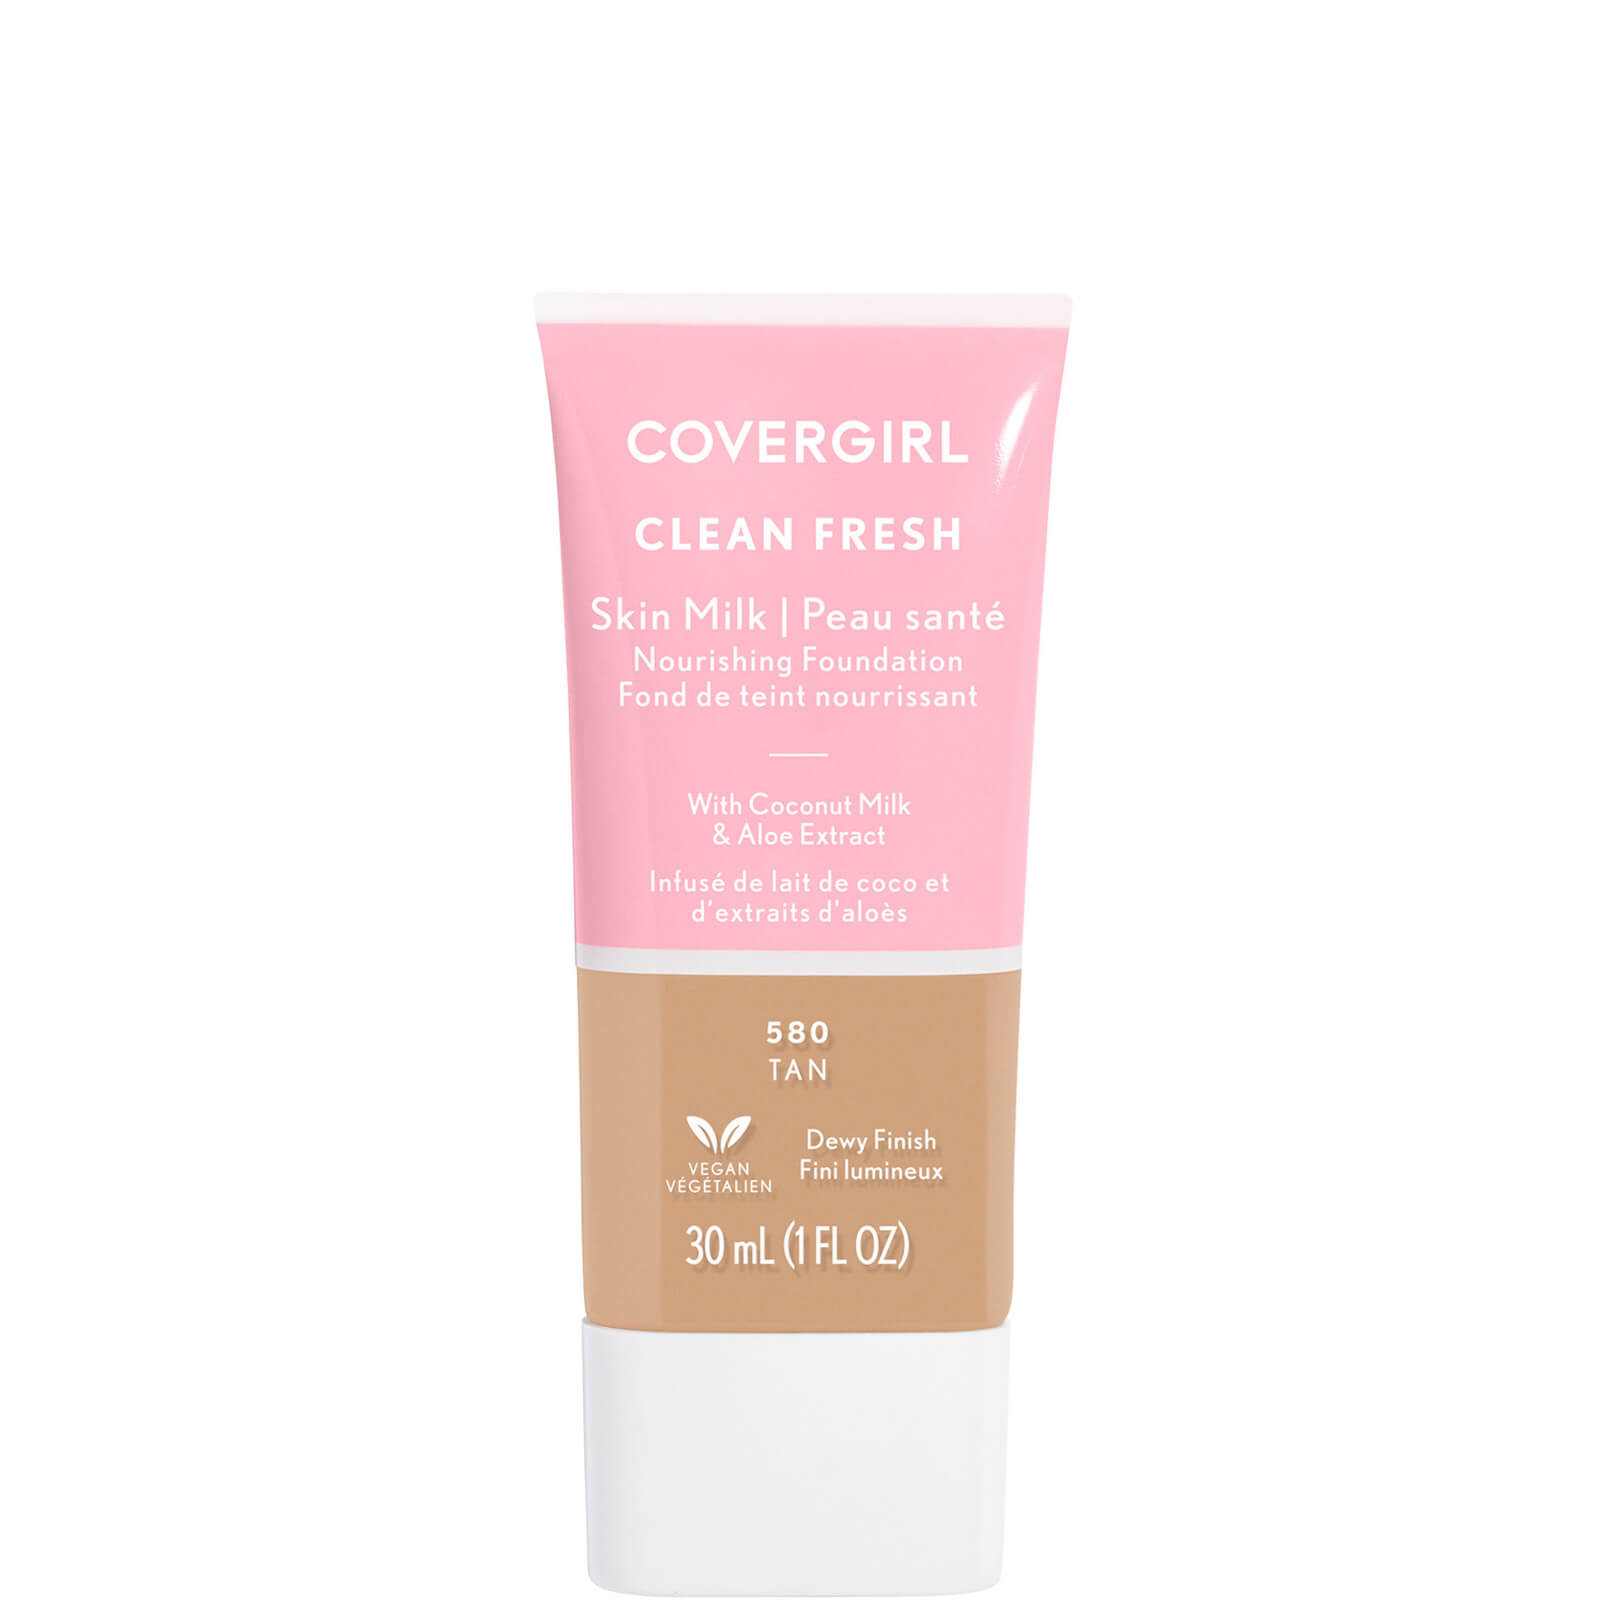 Covergirl Clean Fresh Skin Milk Foundation 1oz (Various Shades) - Tan